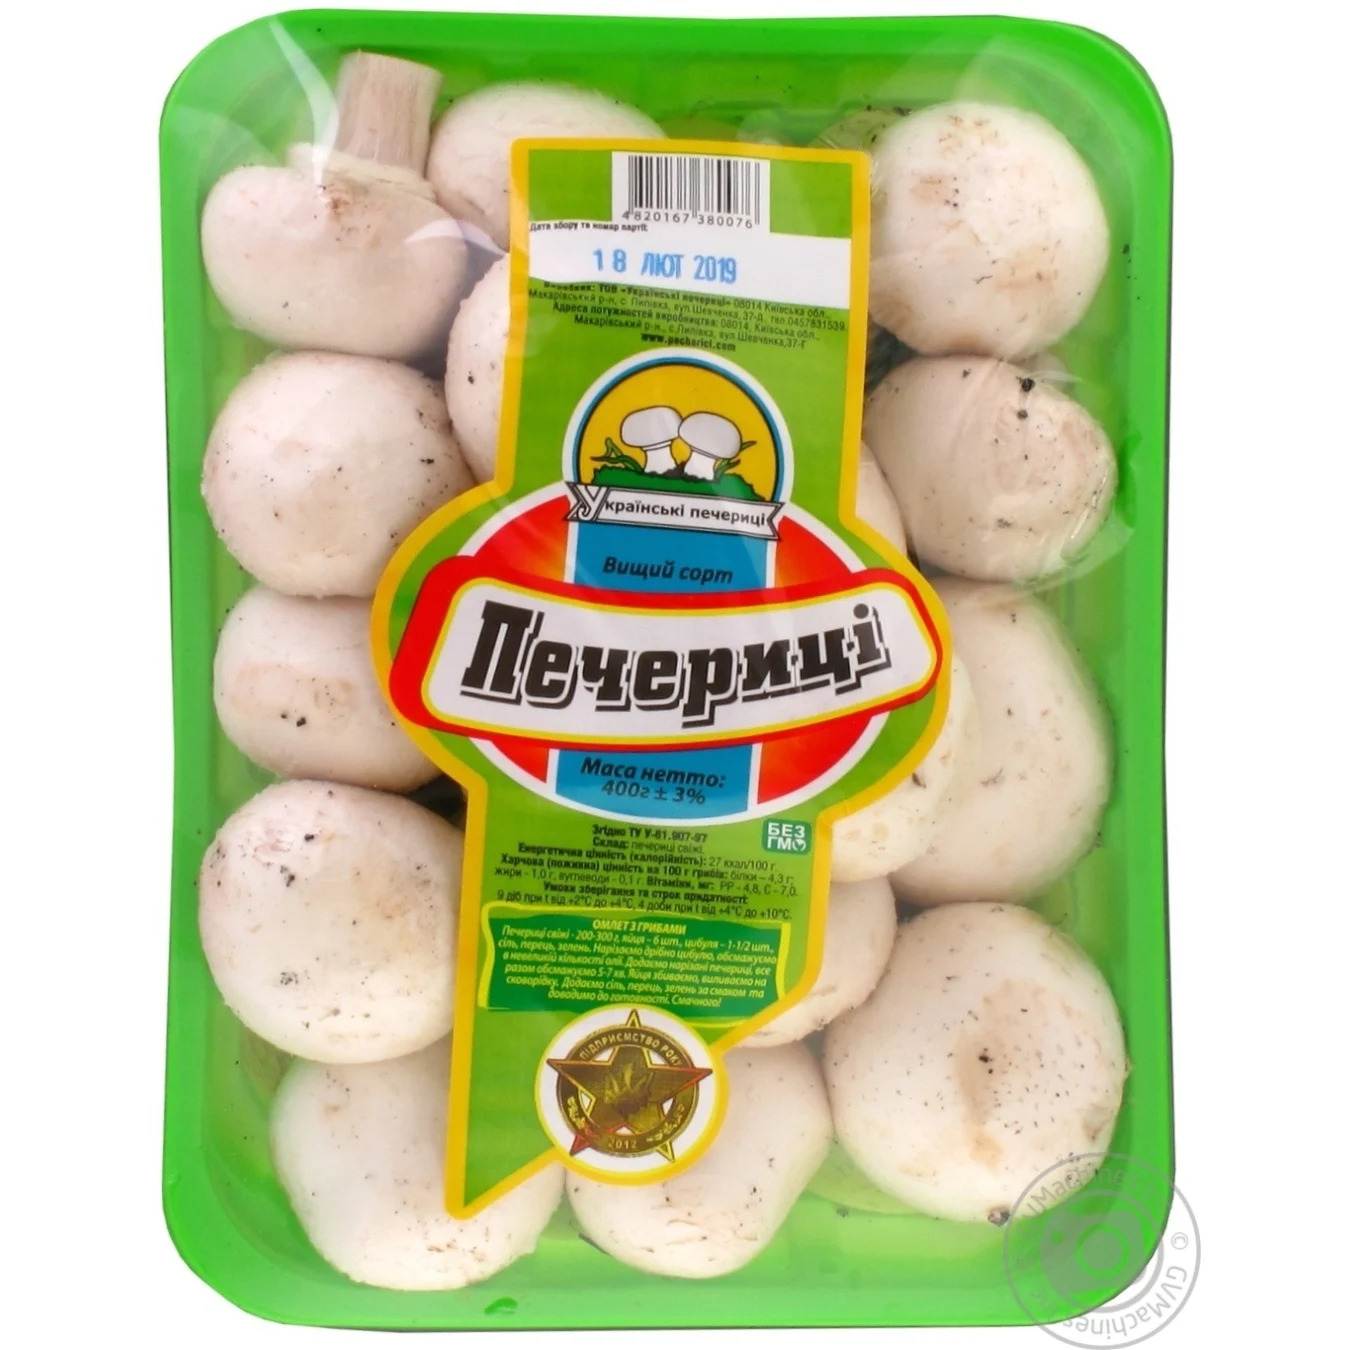 Mushrooms Mushrooms Ukrainian mushrooms 400g